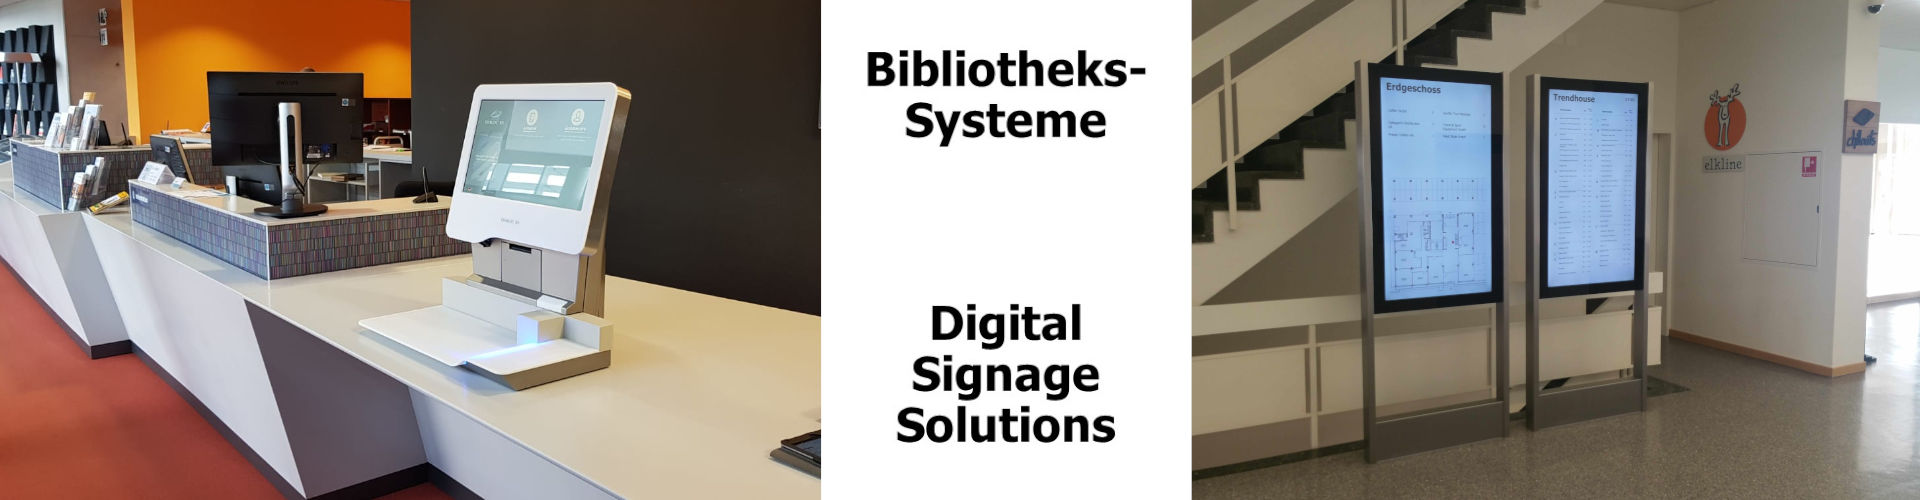 Bibliothekssysteme und Digital Signage 